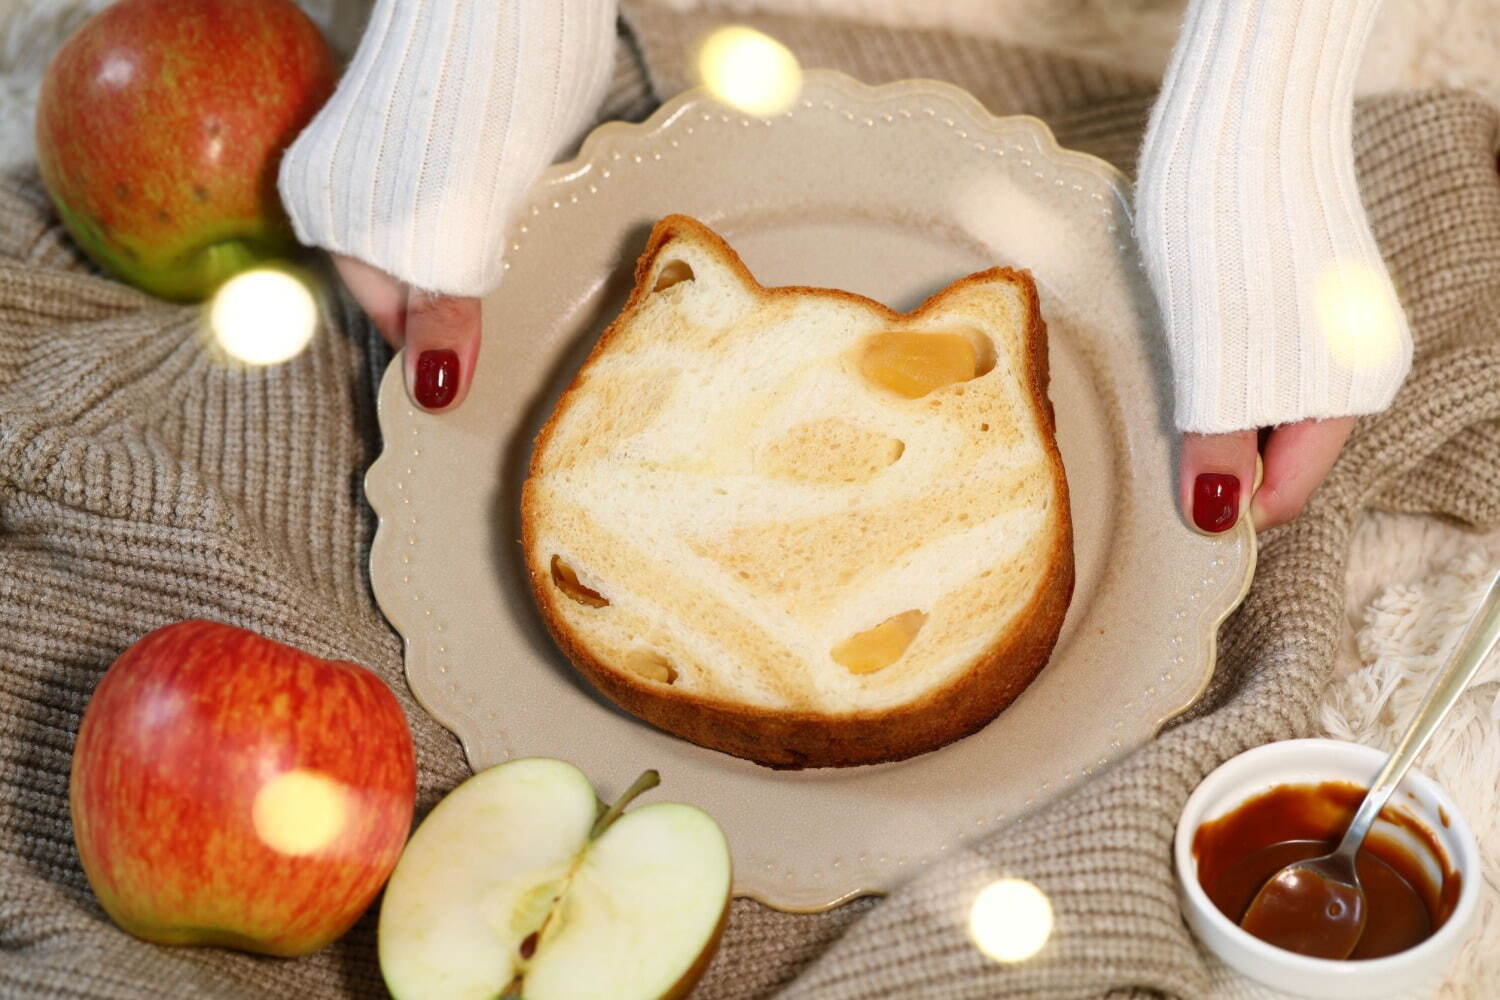 ねこねこ食パン  キャラメルアップル 1個 880円(店頭価格)